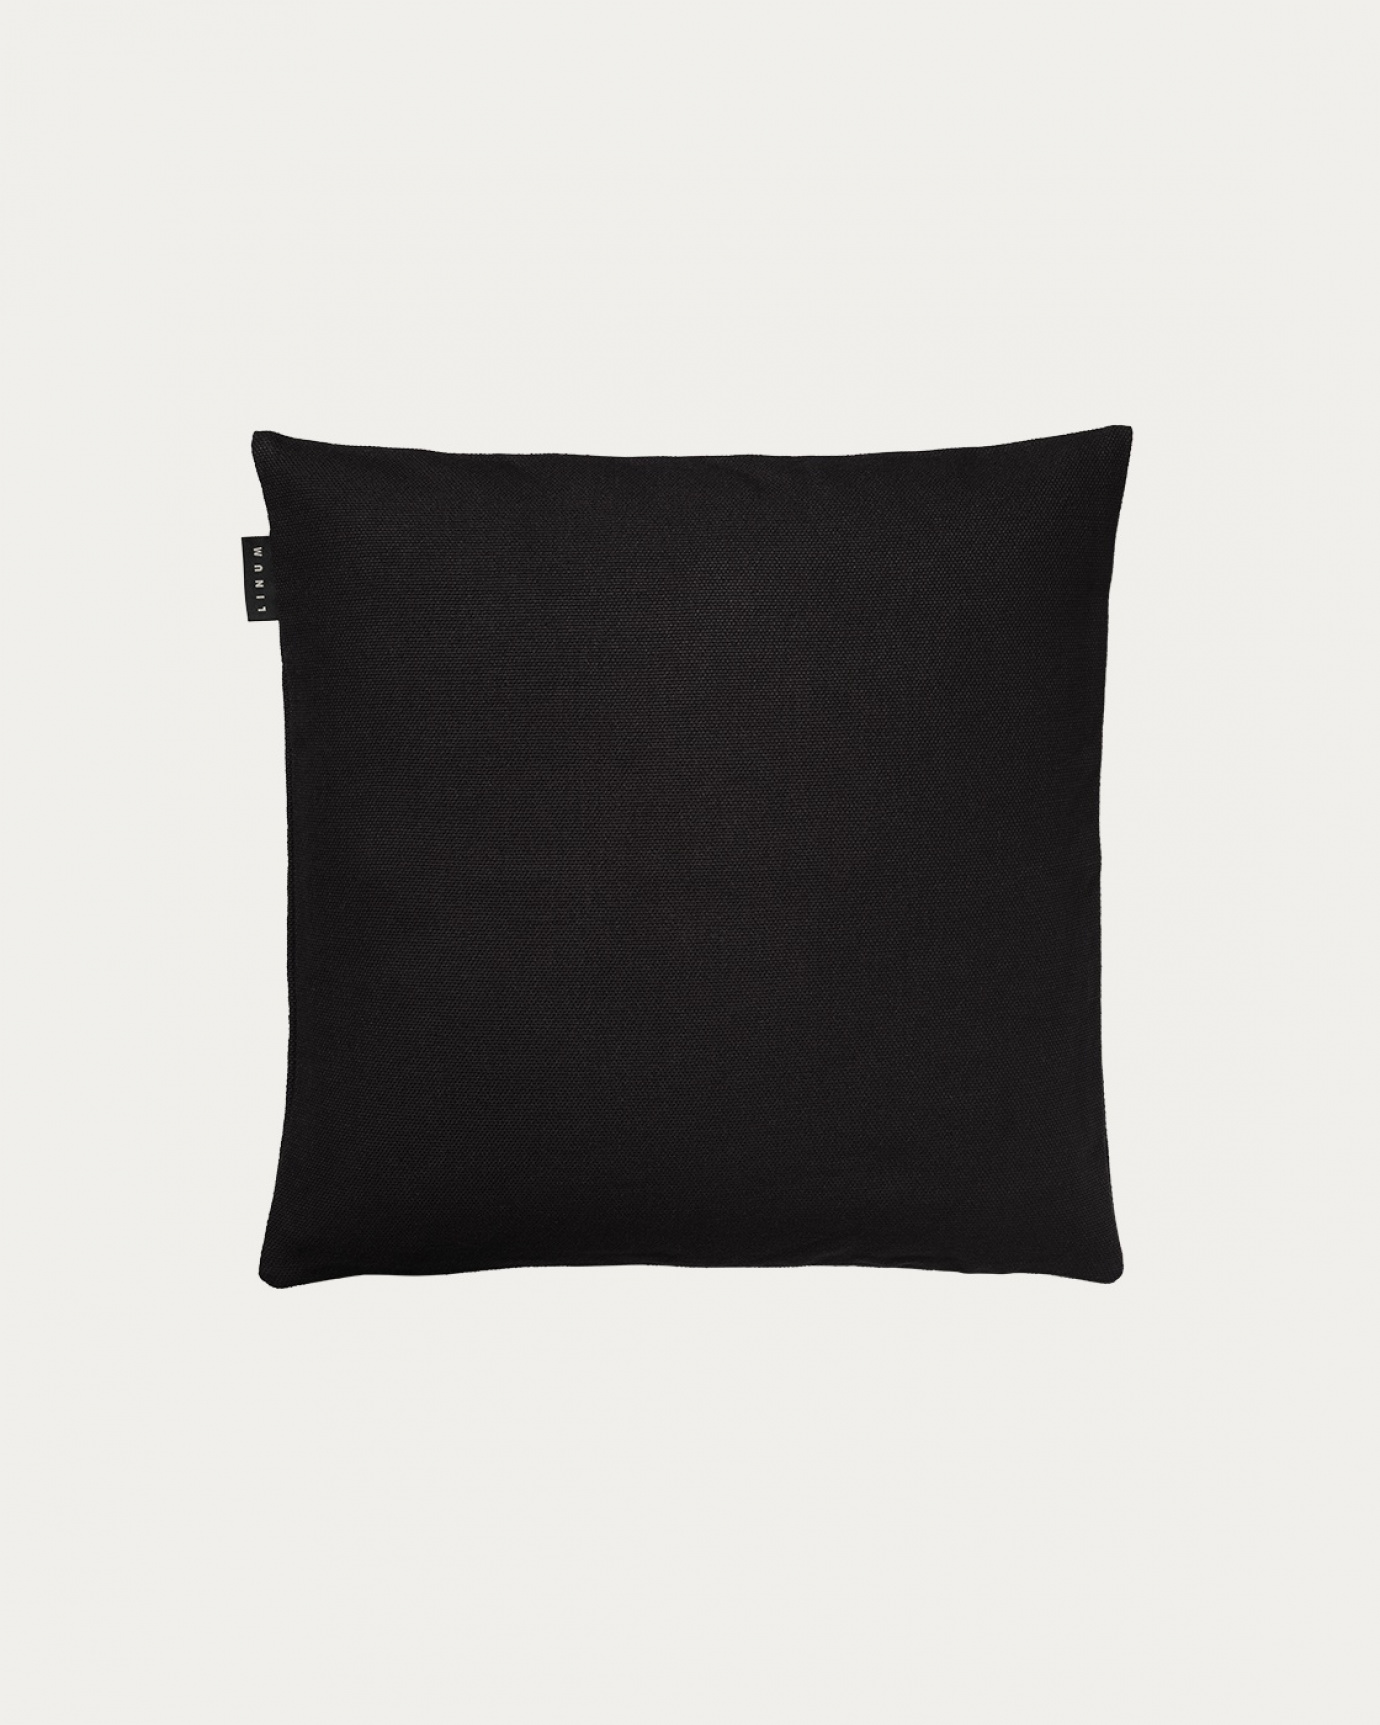 Produktbild schwarz PEPPER Kissenhülle aus weicher Baumwolle von LINUM DESIGN. Einfach zu waschen und langlebig für Generationen. Größe 40x40 cm.